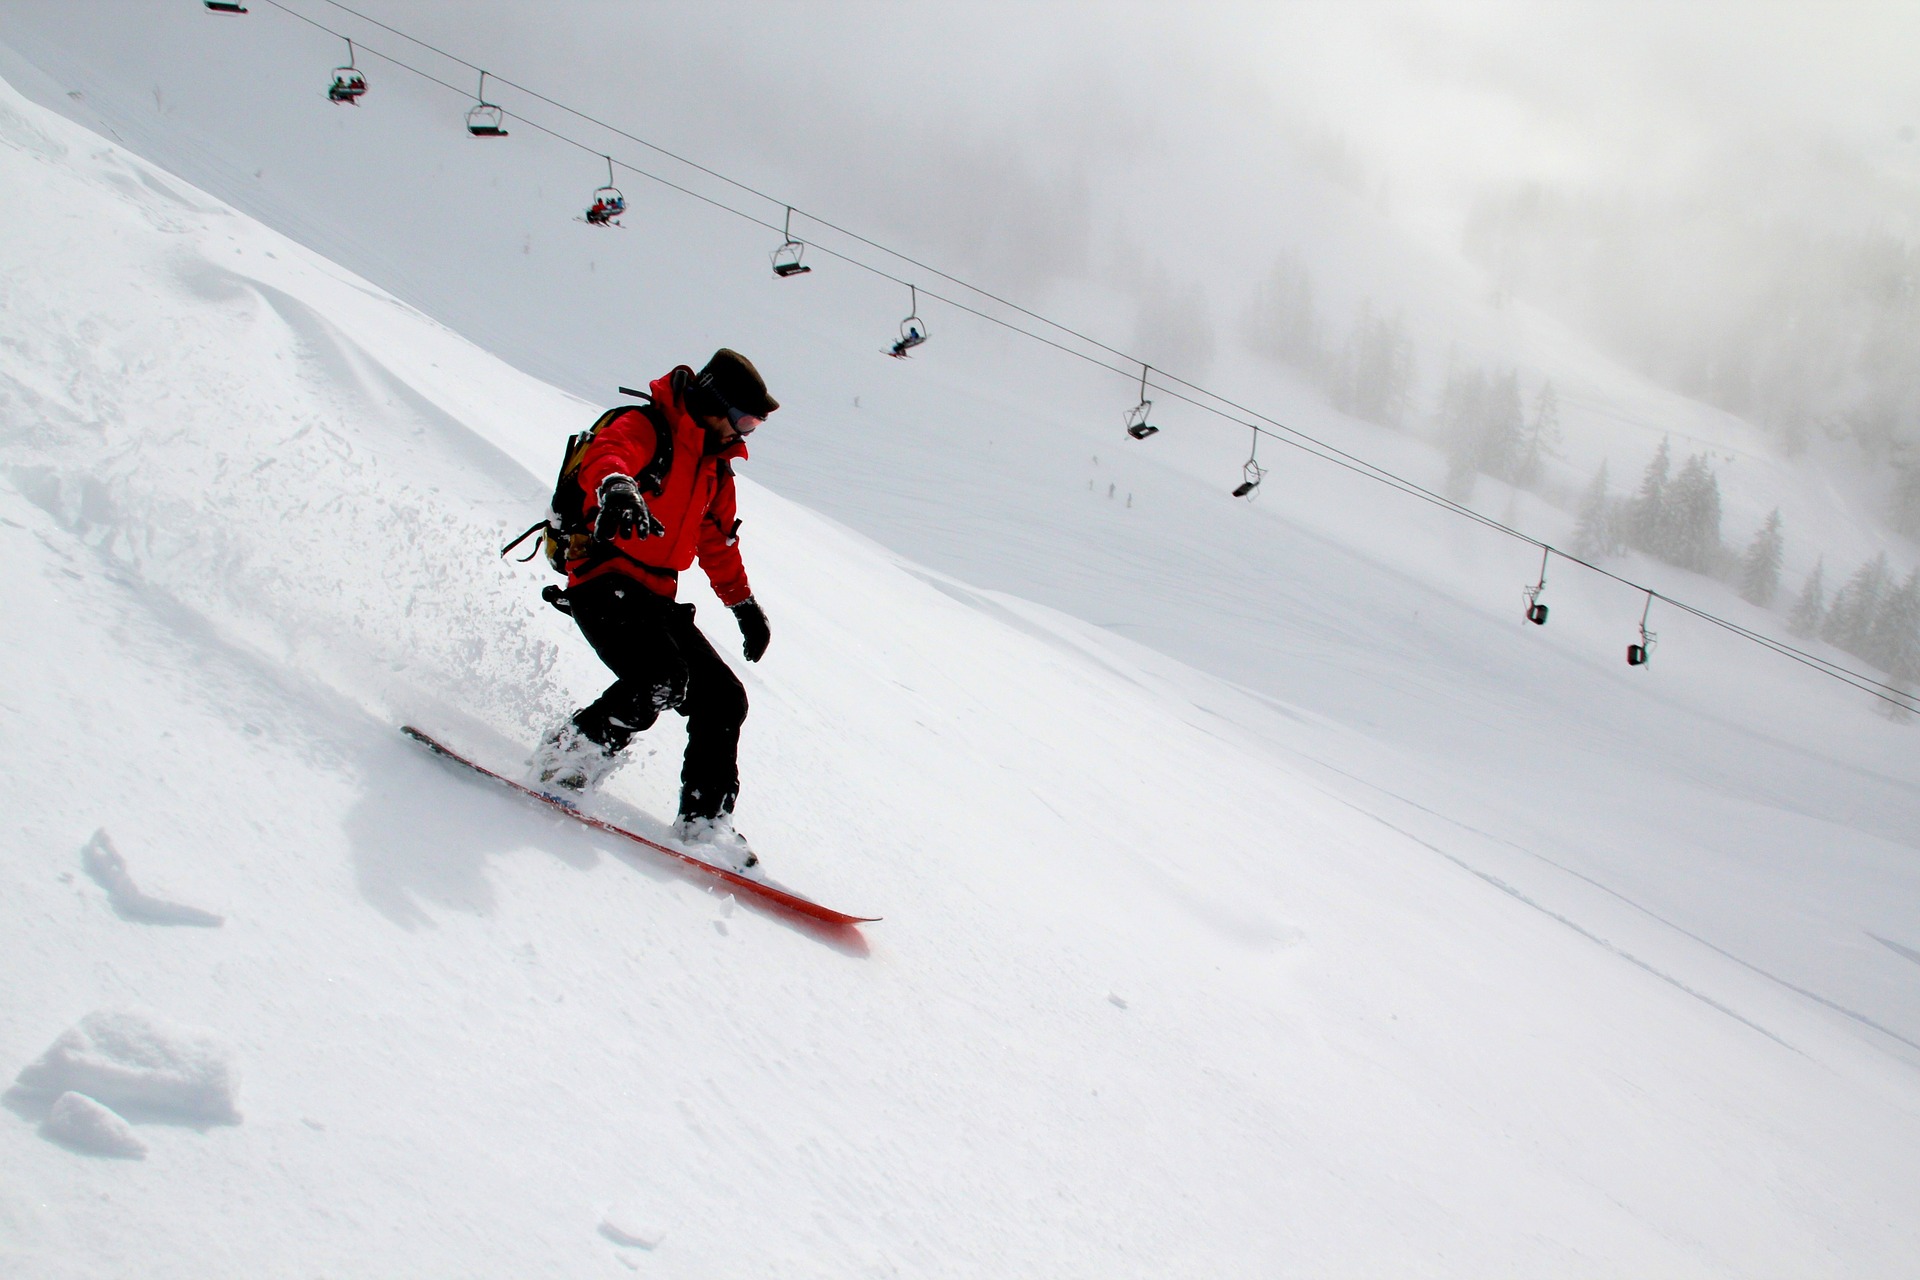 Keskitason, aloittelevat ja kokeneet hiihtäjät voivat hyötyä näistä vinkeistä.